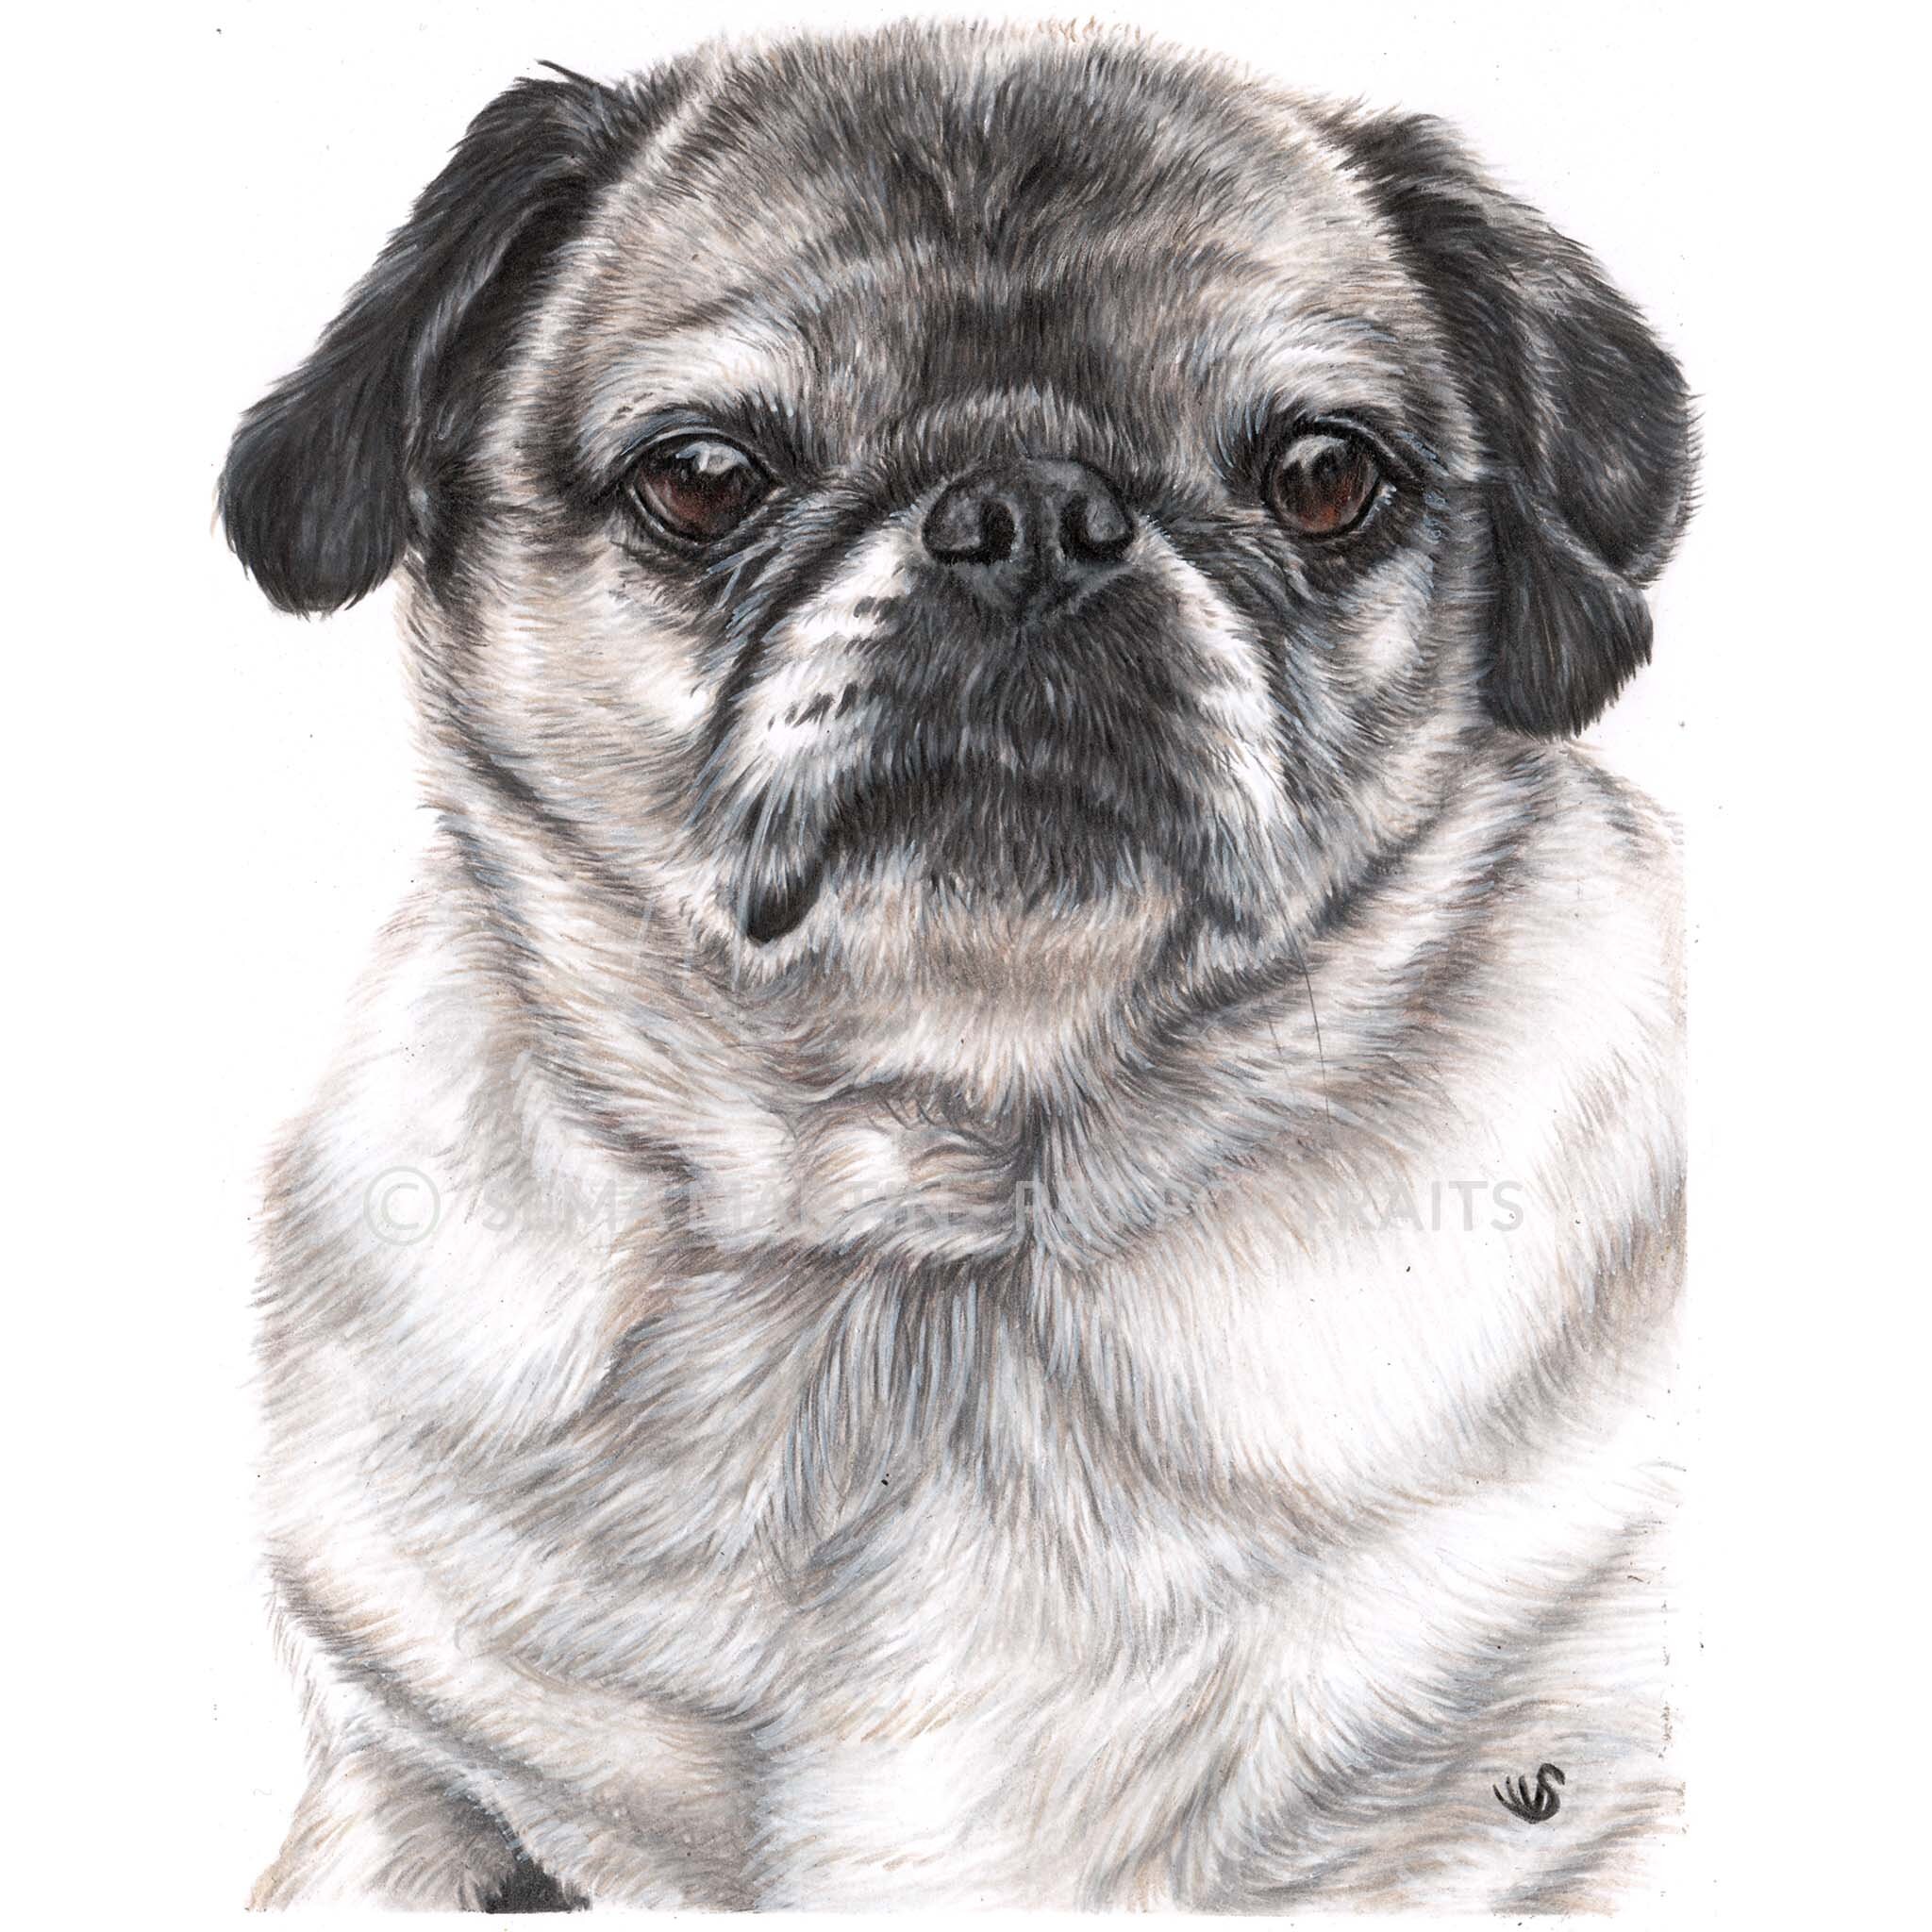 Pet portrait Custom pencil portrait pug dog pet commission